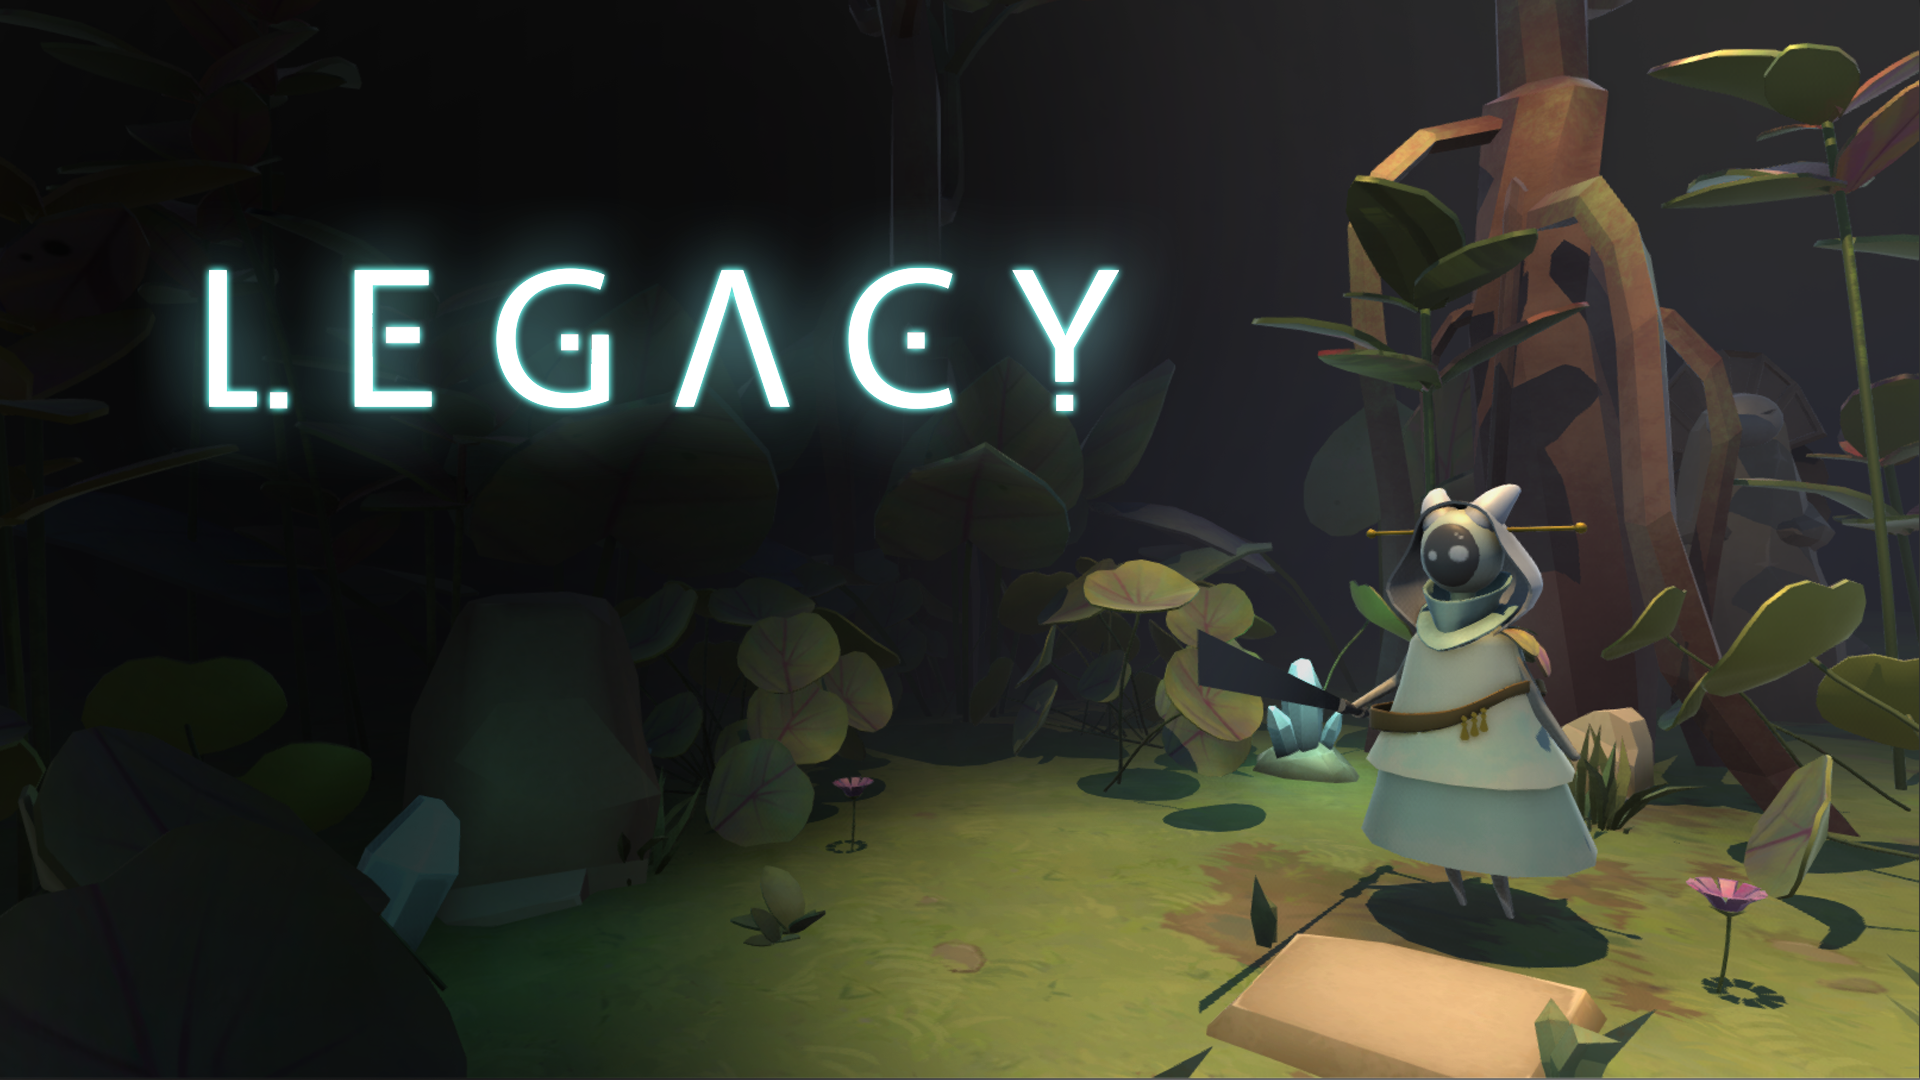 Ecrant titre du jeu Legecy. Le protagoniste y est représenté avec une capuche et une machette au milieu de la jungle dense et sombre. Site de Lucas BENARD.